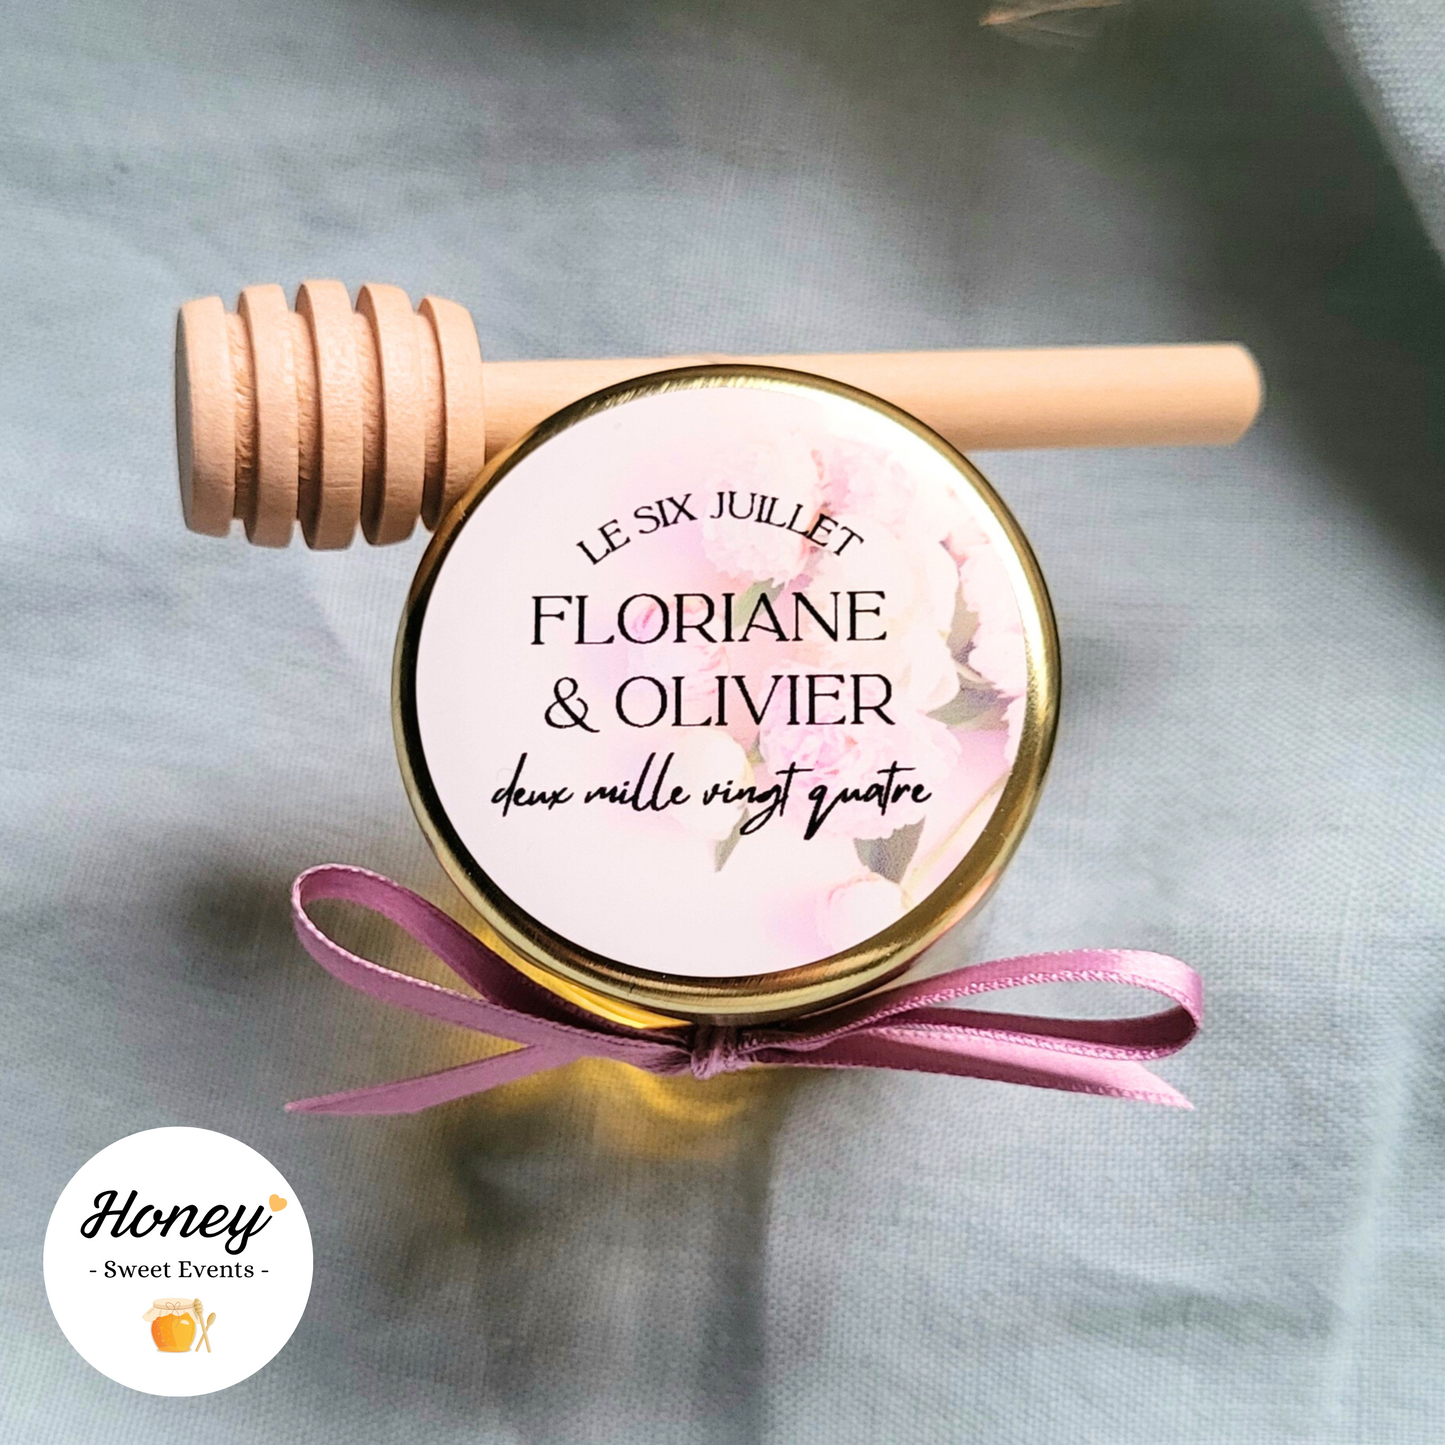 Pivoines - Mini pot de miel personnalisé cadeaux invités mariage baptême anniversaire naissance